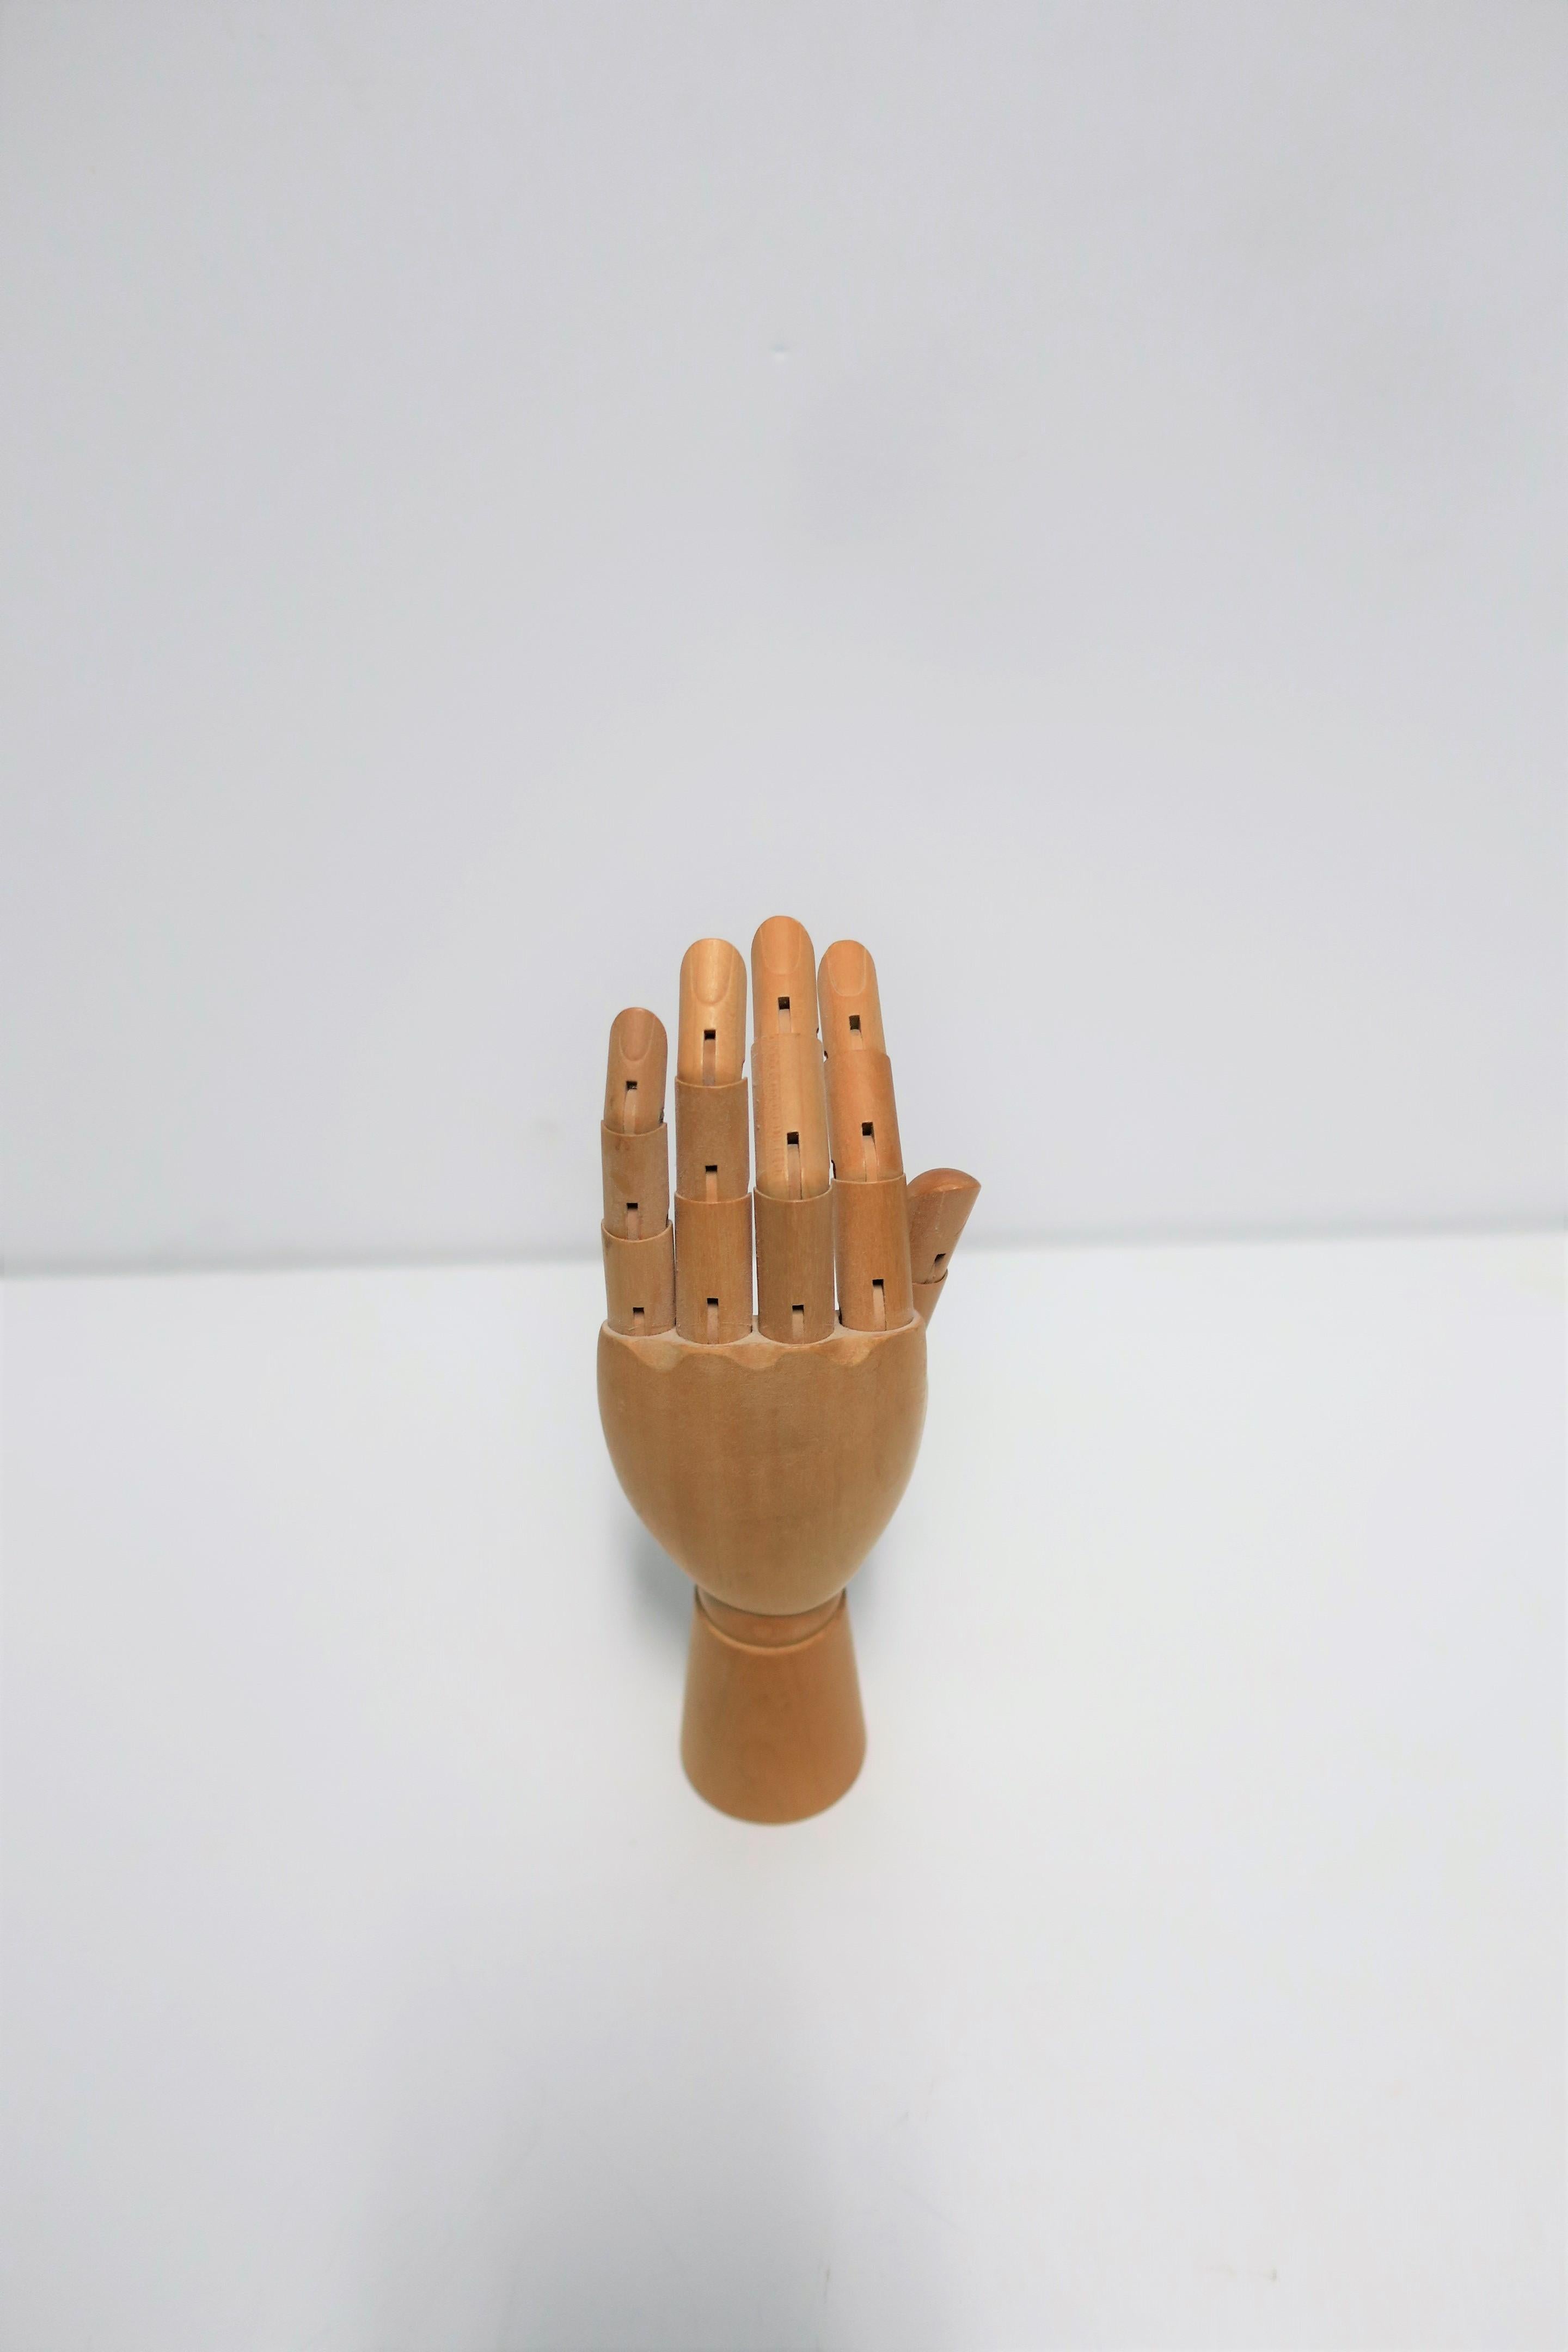 Articulating Wood Hand Sculpture Piece 10